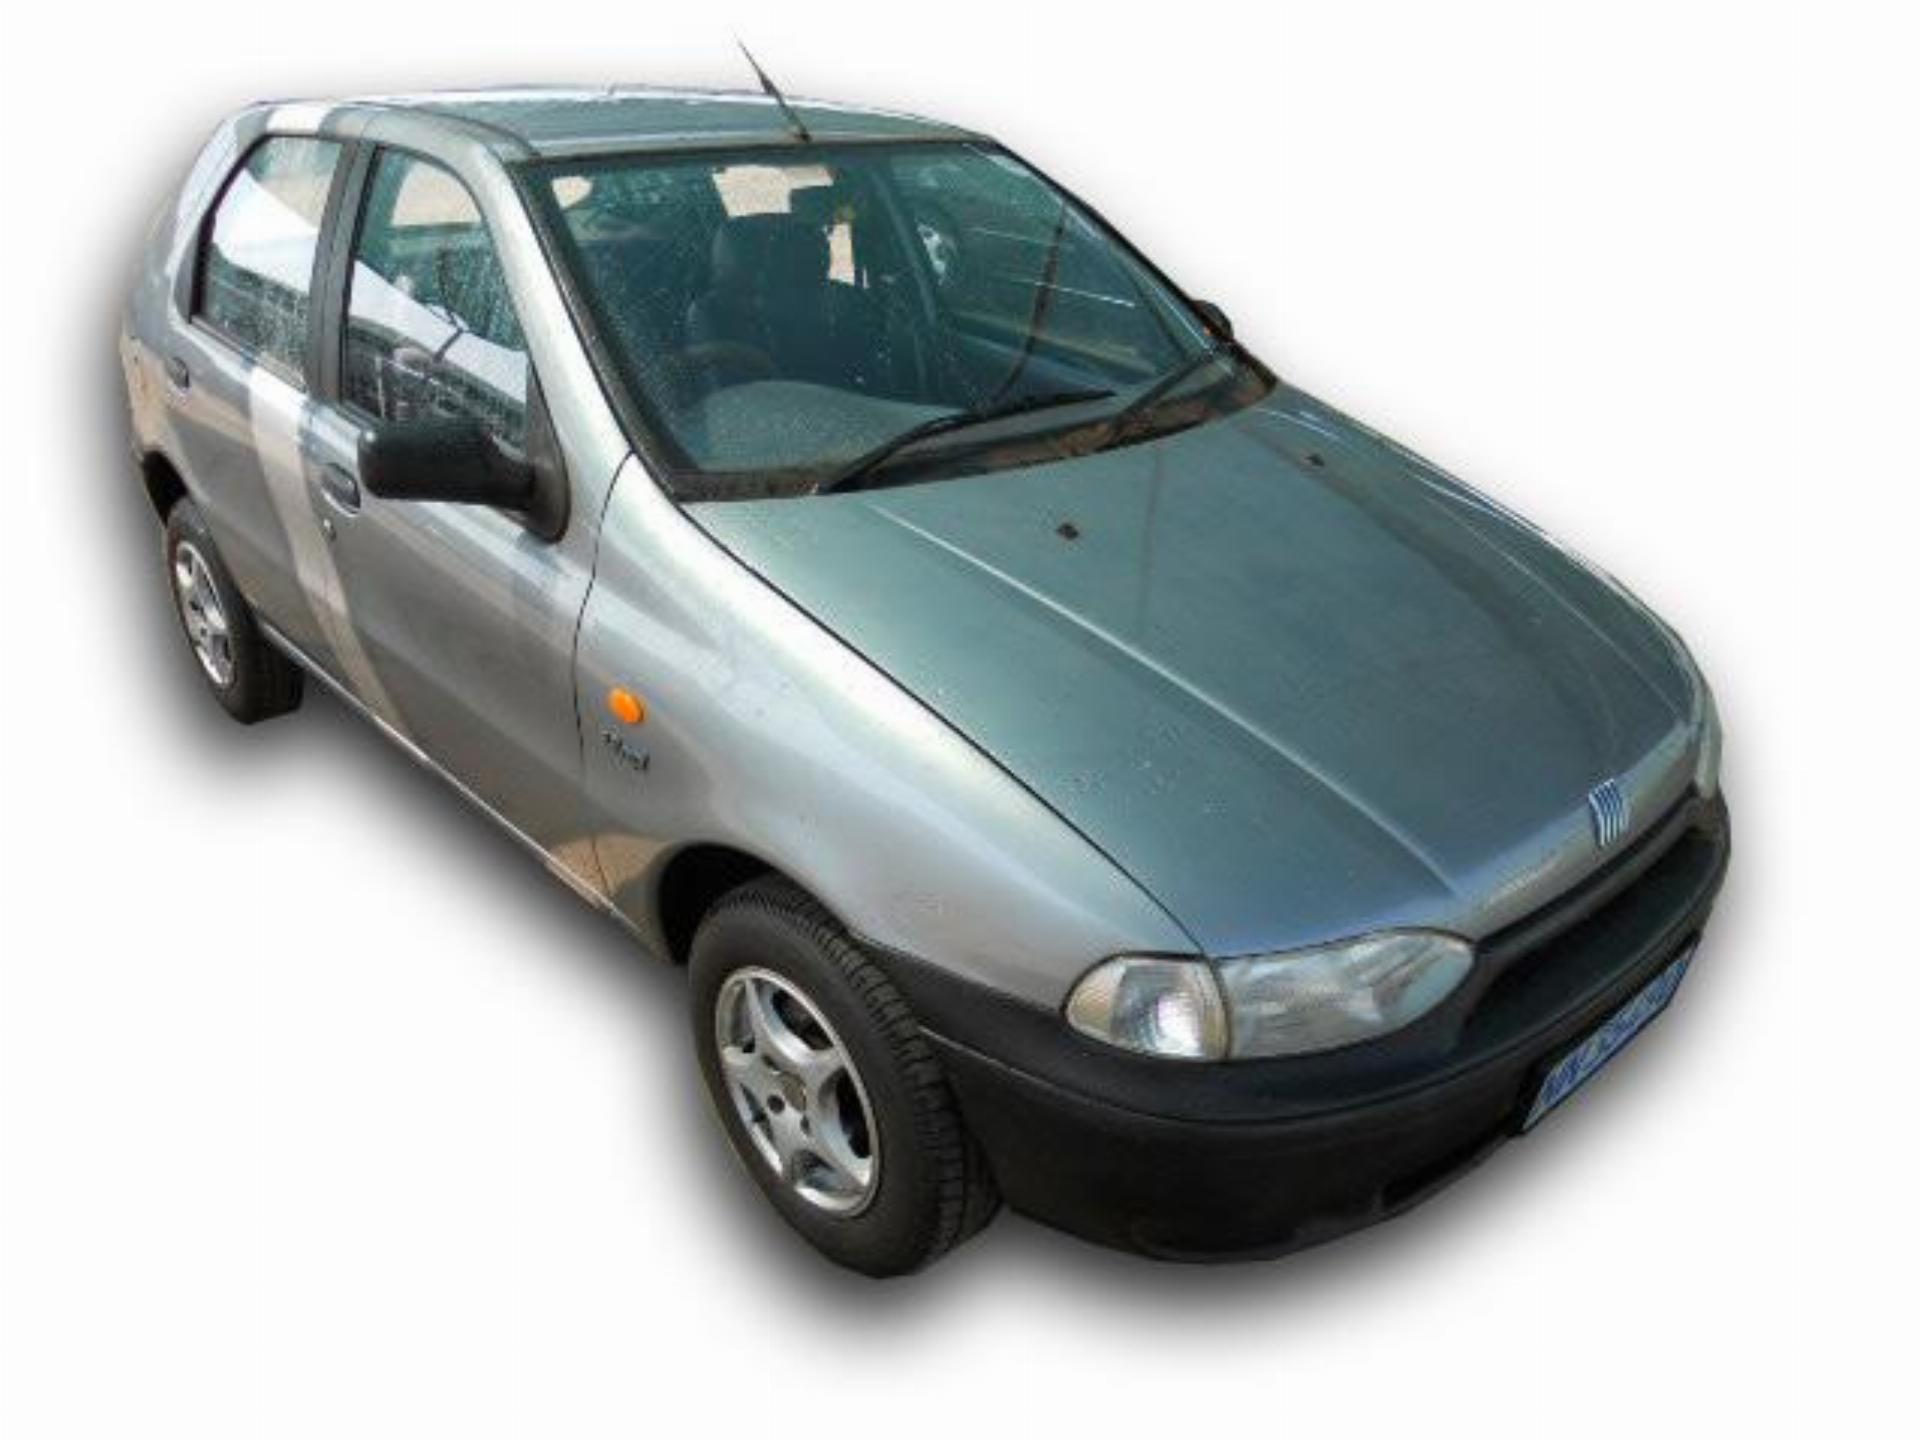 Repossessed Fiat Palio 1.2 2000 on auction MC11273